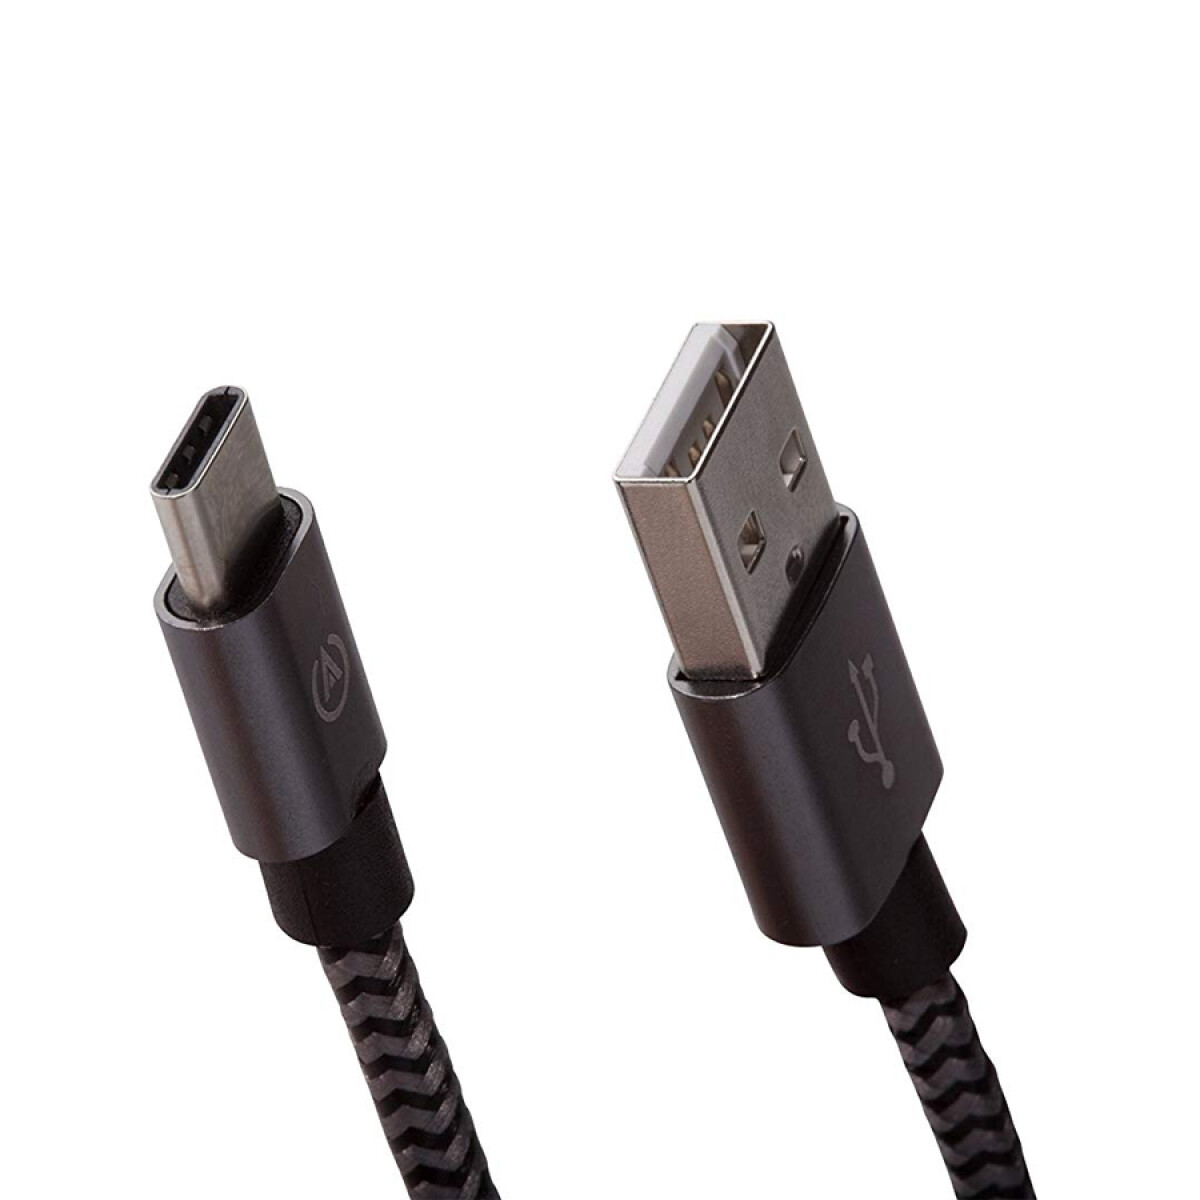 PowerA Premium USB C Cable 3 Metros 